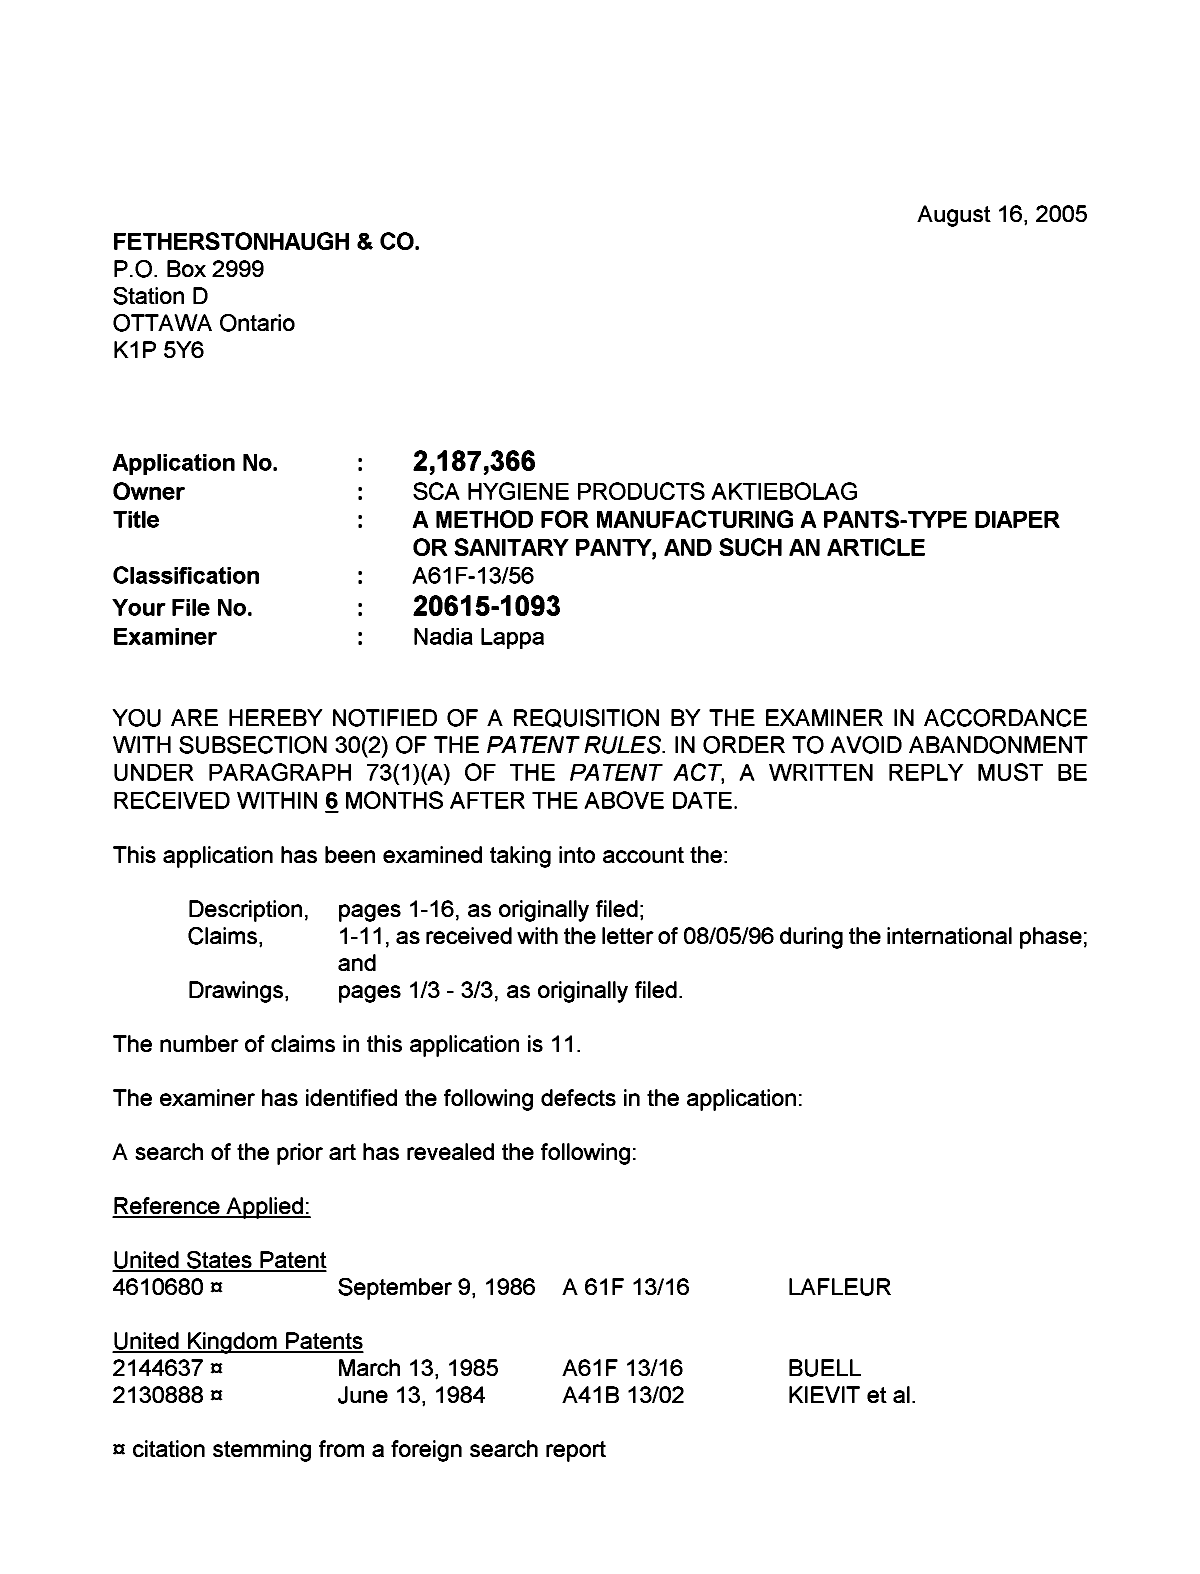 Document de brevet canadien 2187366. Poursuite-Amendment 20050816. Image 1 de 2